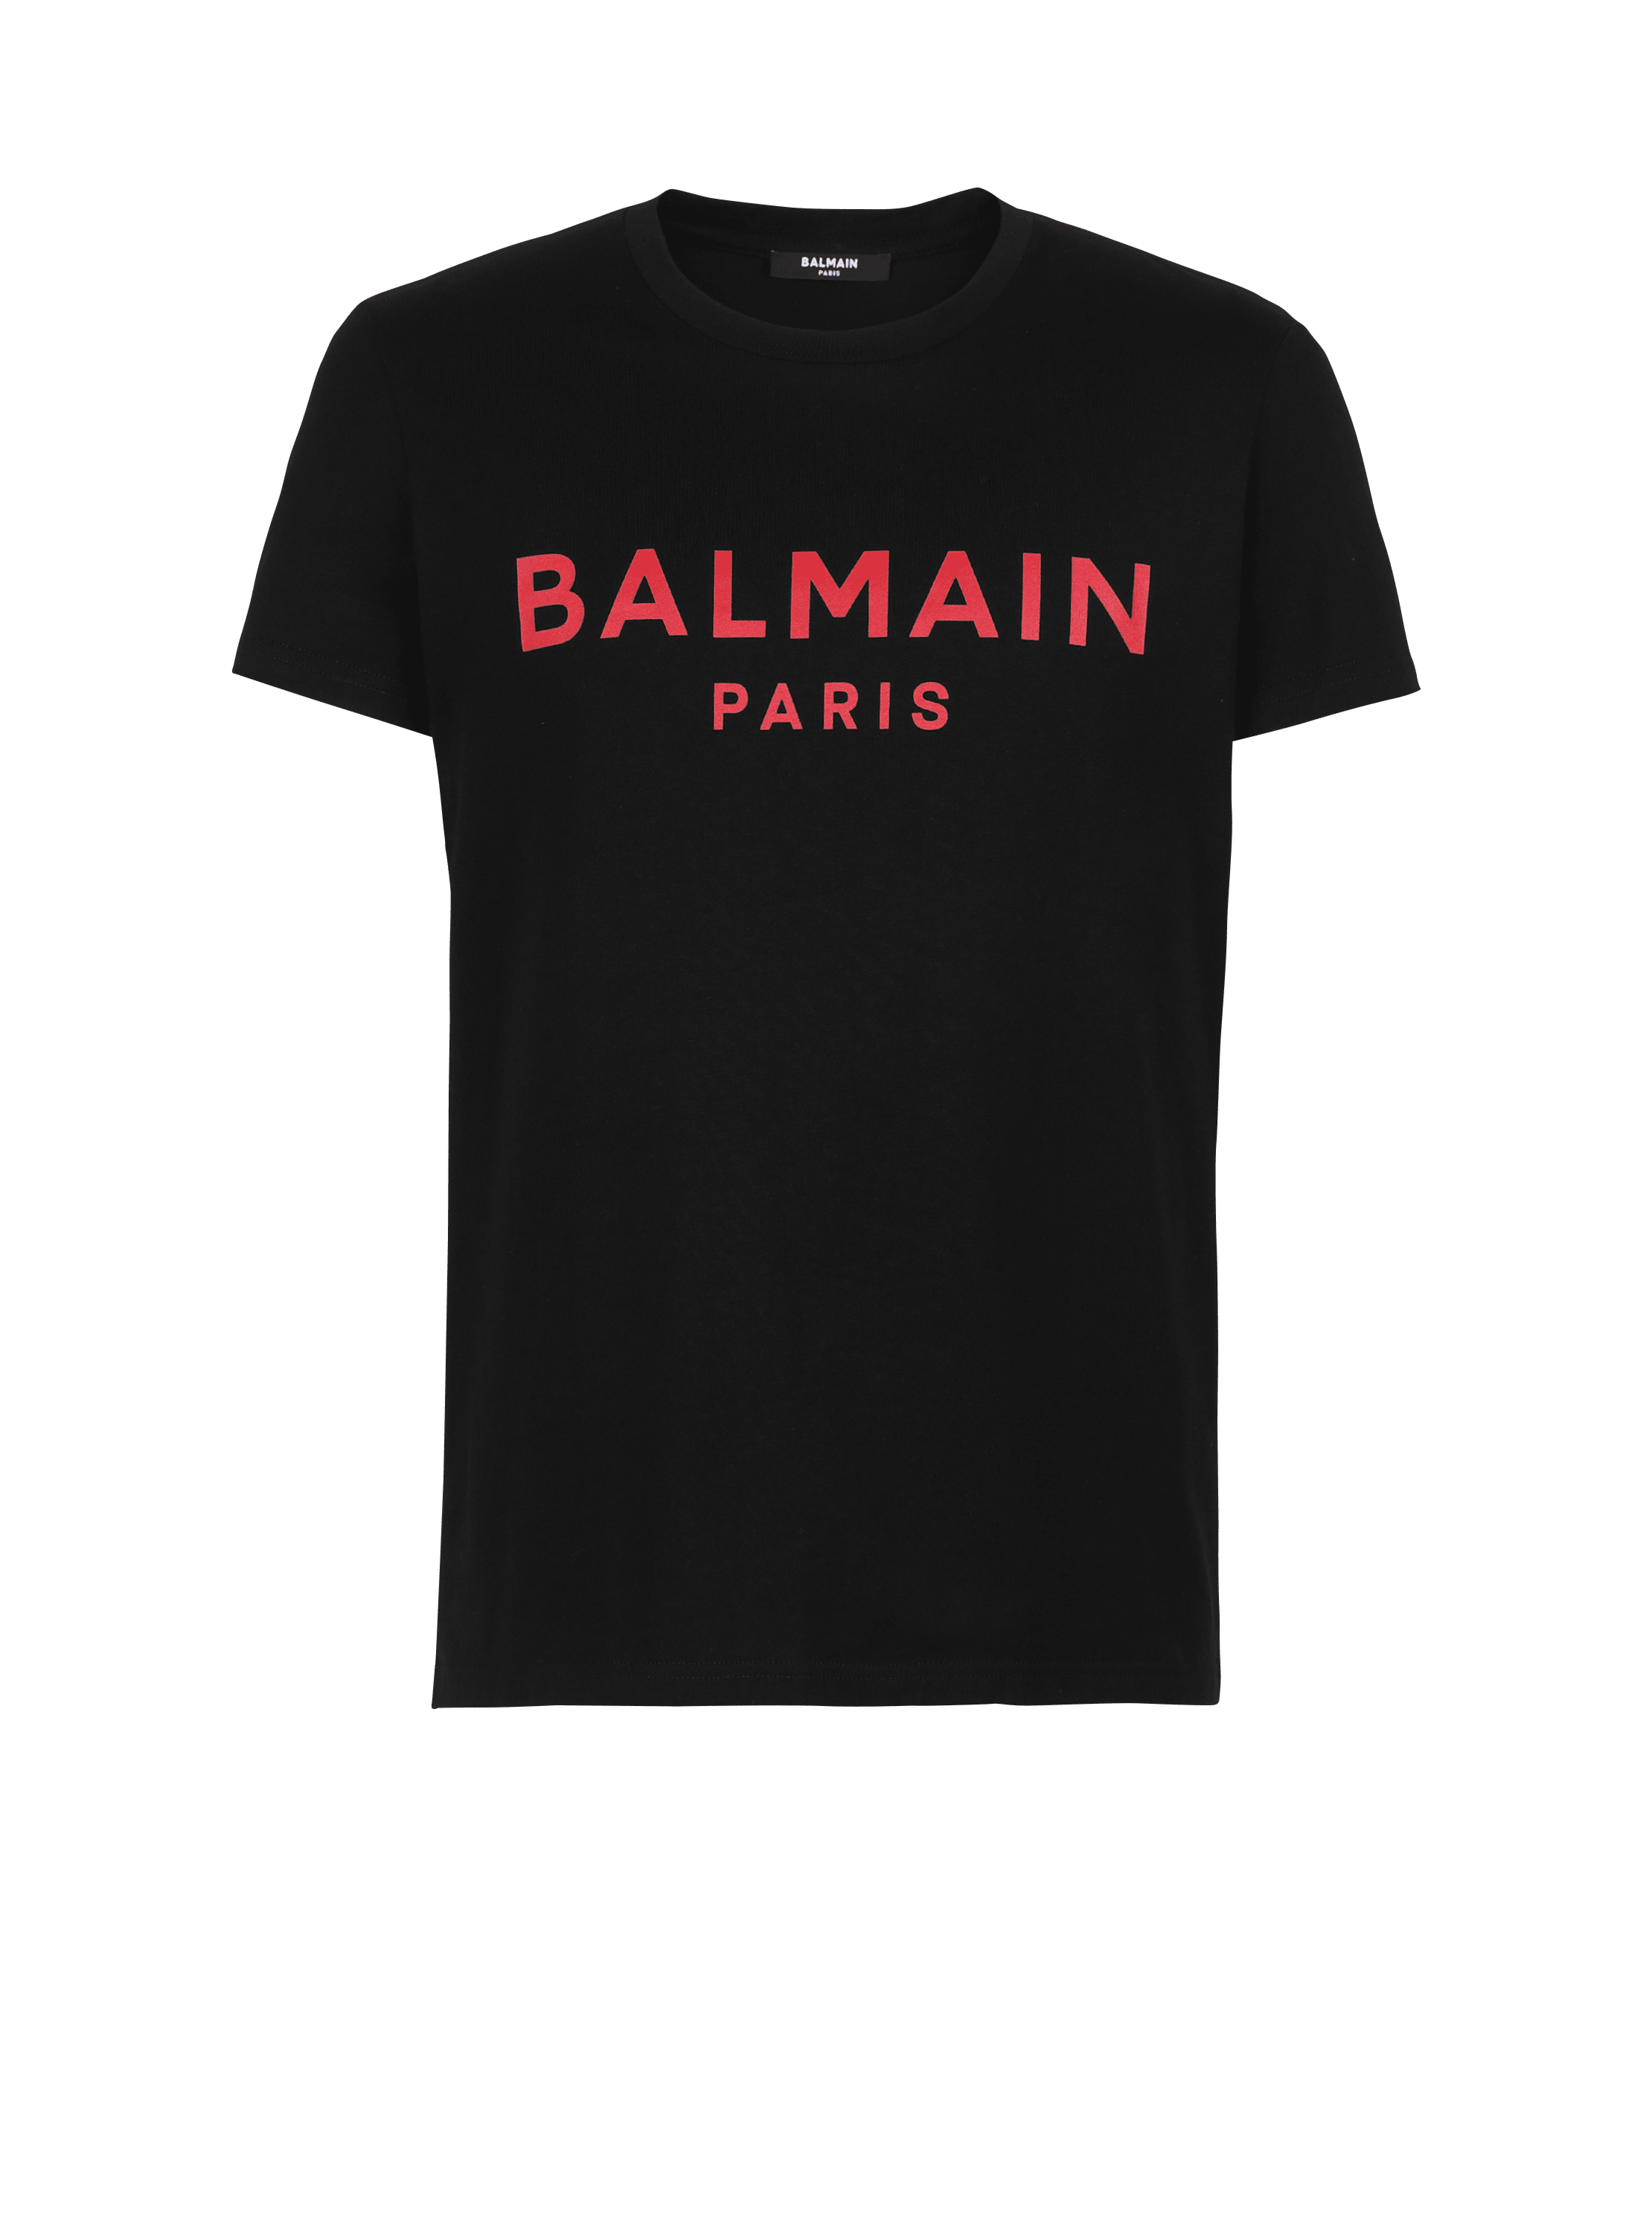 T-shirt in cotone con logo Balmain, nero, hi-res